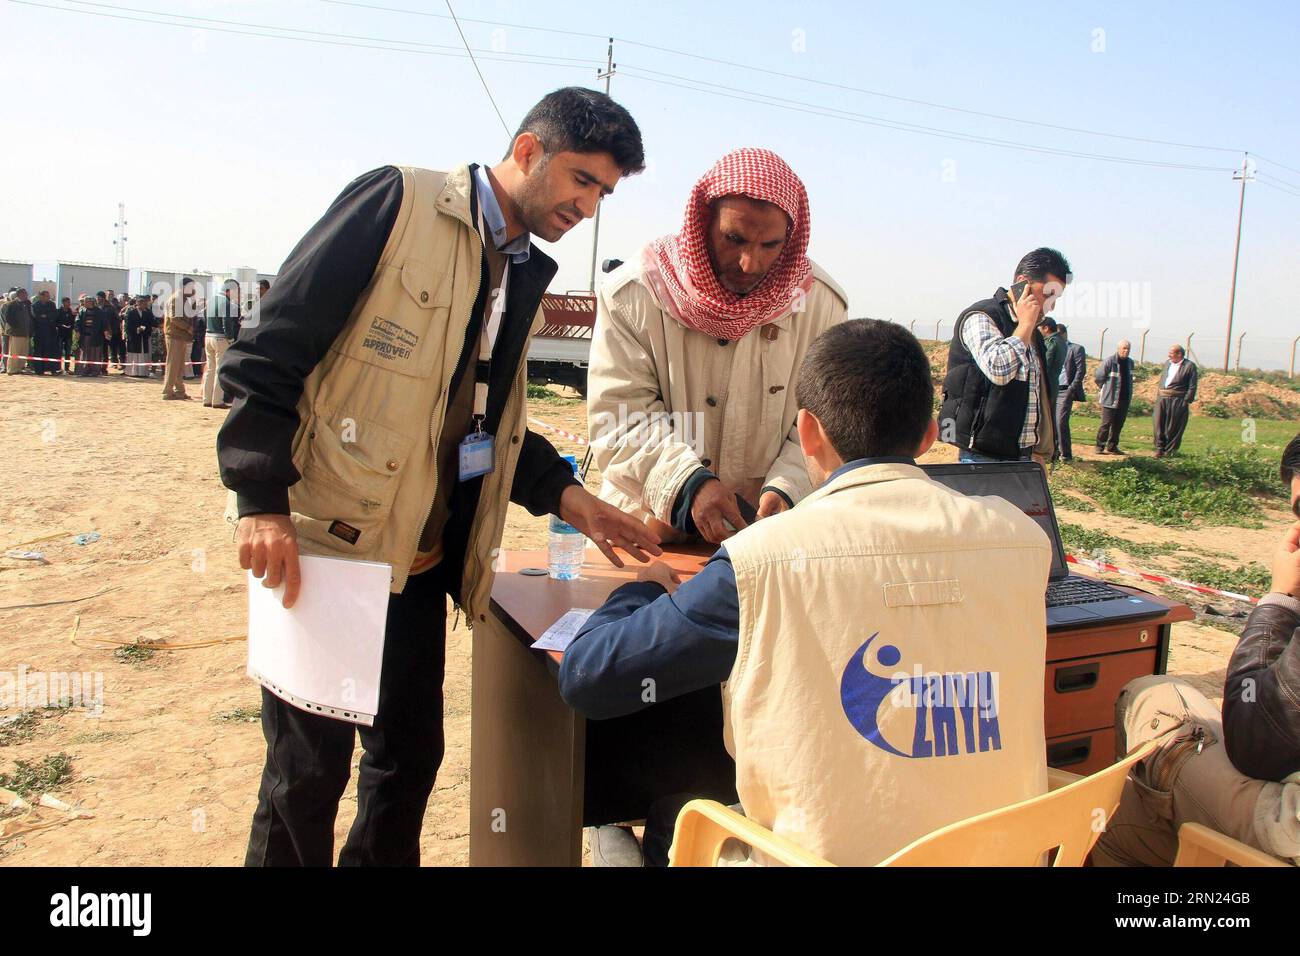 (150207) -- ERBIL, 07 de febrero de 2015 -- Un hombre iraquí se registra para recibir ayuda con la ayuda de trabajadores humanitarios en Erbil, la capital de la región kurda iraquí, el 7 de febrero de 2015. Muchos iraquíes huyeron de Mosul en el norte de Irak después de que los militantes del Estado Islámico tomaron la ciudad y tomaron instalaciones públicas en las afueras de Erbil como sus hogares temporales. IRAK-ERBIL-DESPLAZADO YaserxJawad PUBLICATIONxNOTxINxCHN Erbil 07 2015 de febrero al Registro de hombres iraquíes para recibir ayuda con la ayuda de trabajadores humanitarios en Erbil, la ciudad capital de la región kurda iraquí EL 7 2015 de febrero Muchos de celebridades iraquíes fuera de Nort Foto de stock